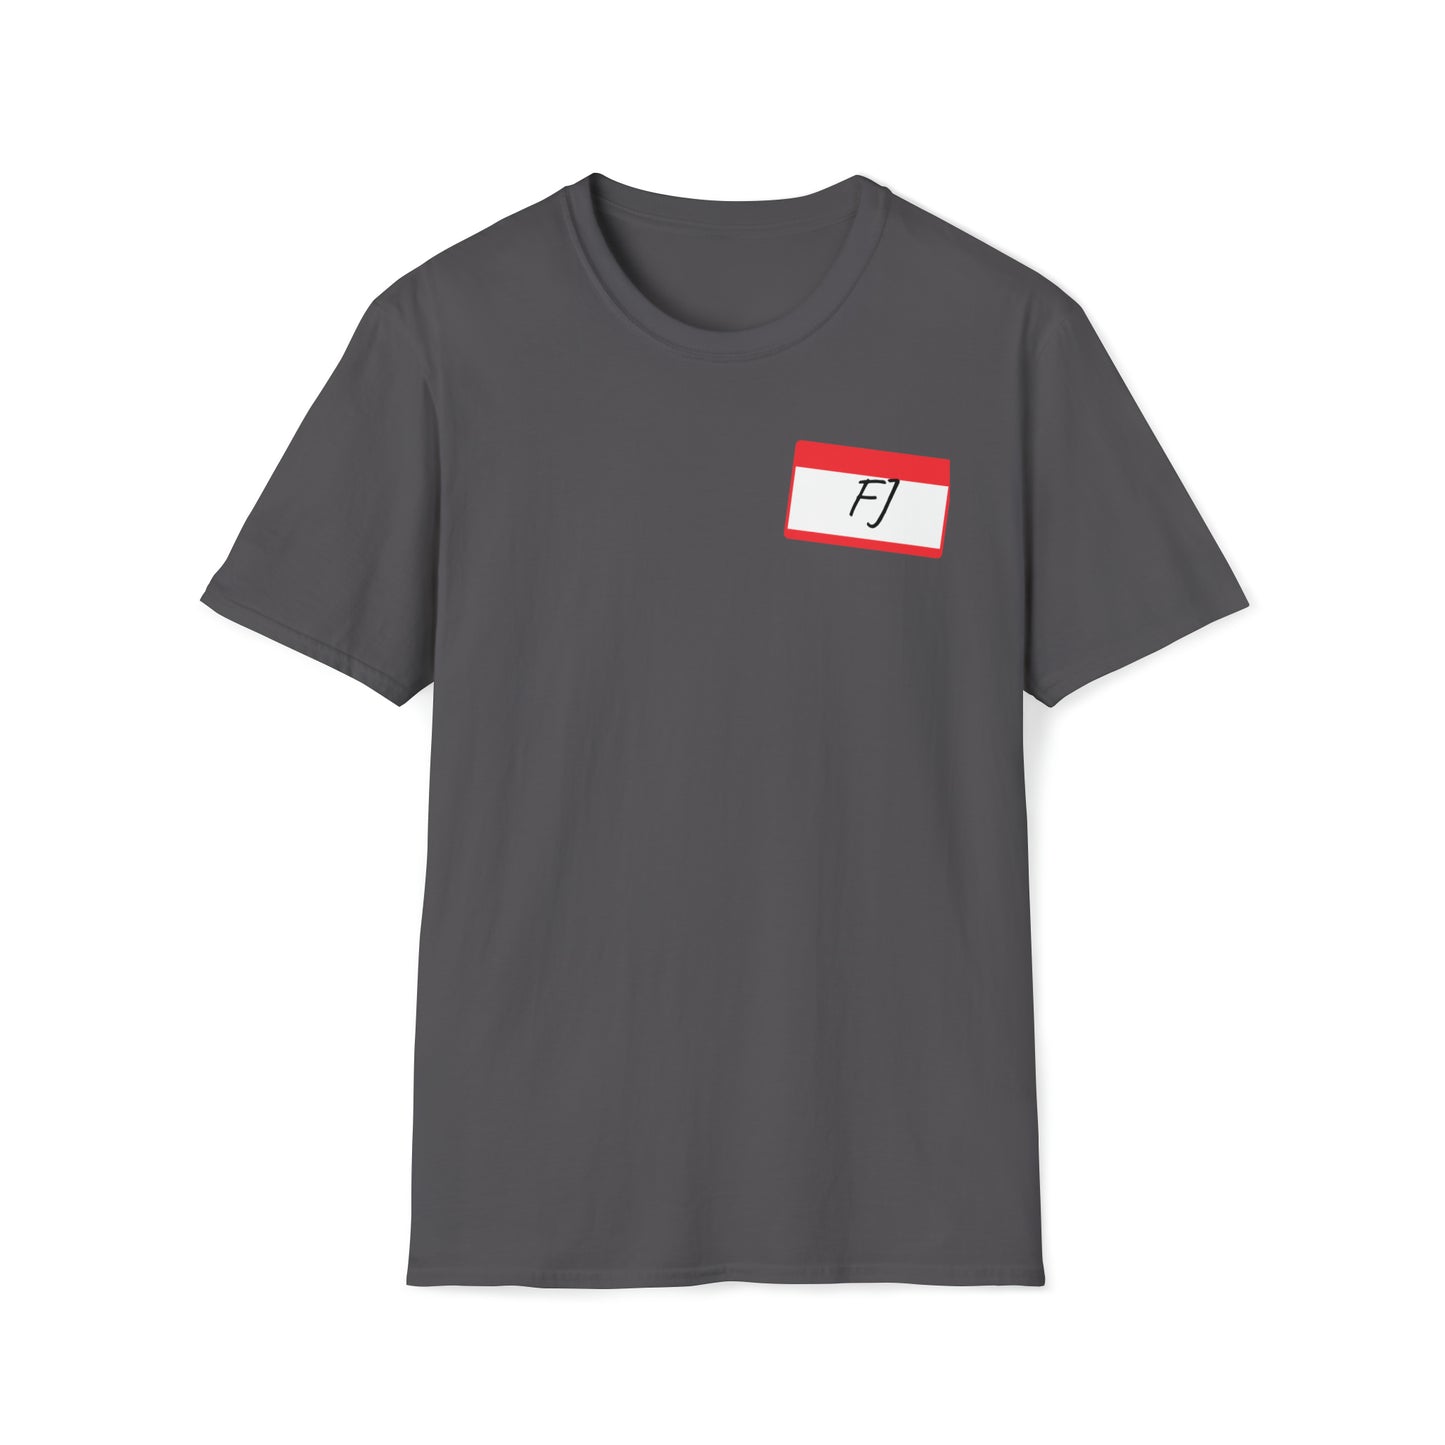 FJ Unisex Softstyle T-Shirt